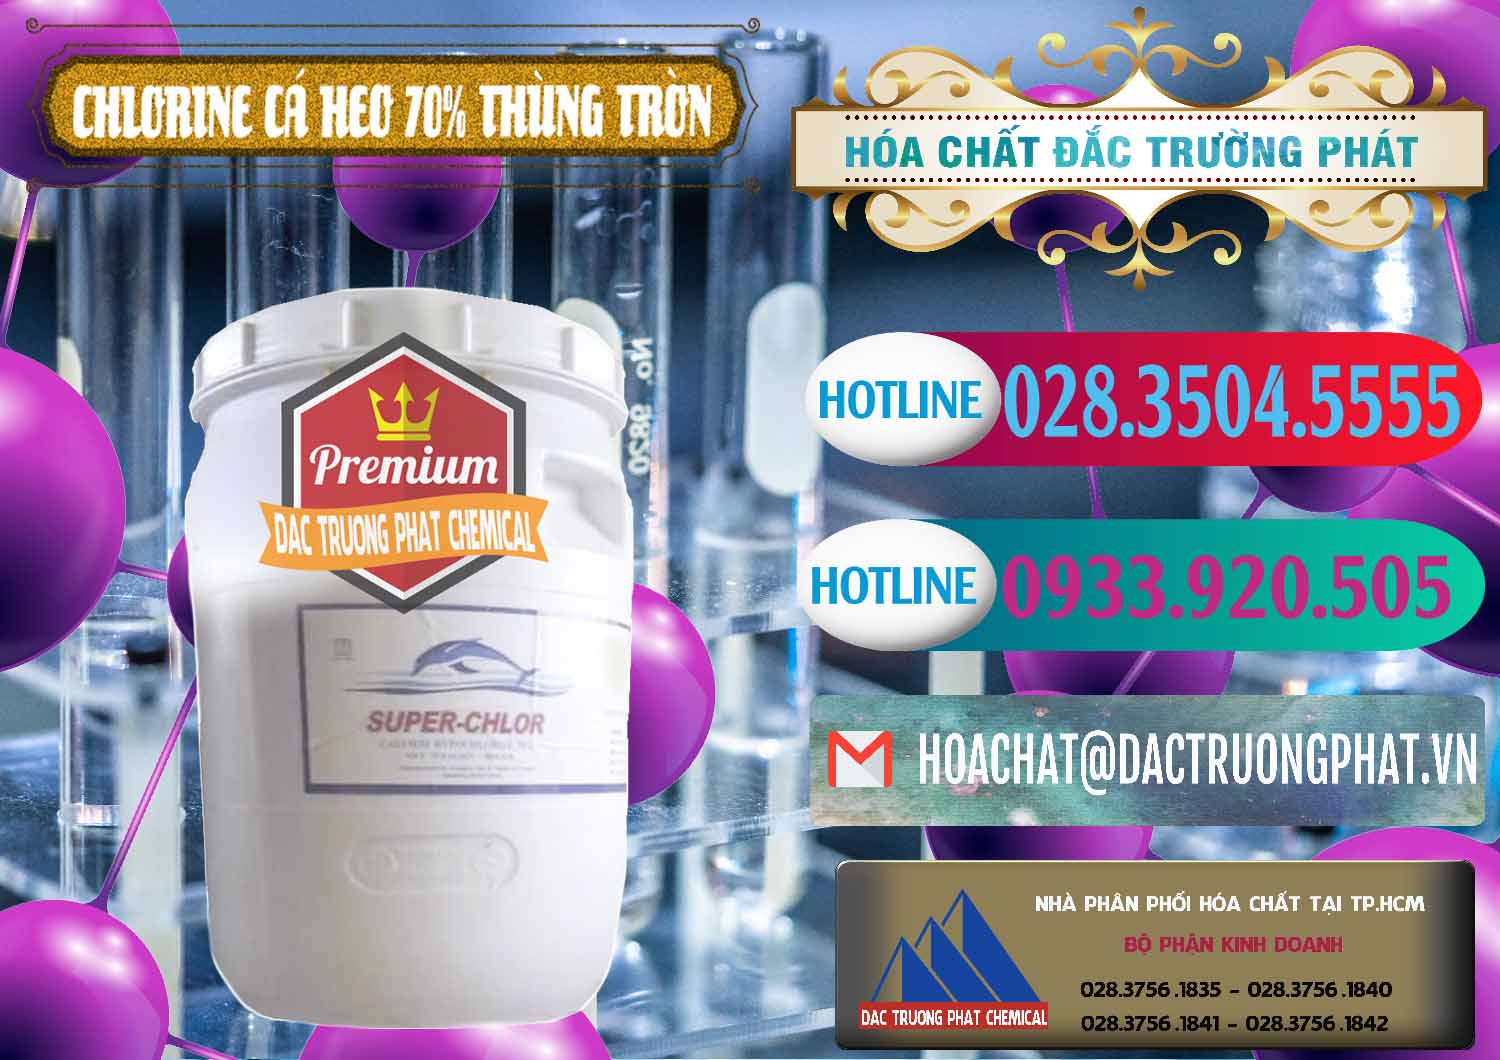 Đơn vị chuyên cung cấp & bán Clorin - Chlorine Cá Heo 70% Super Chlor Thùng Tròn Nắp Trắng Trung Quốc China - 0239 - Nhà phân phối ( kinh doanh ) hóa chất tại TP.HCM - truongphat.vn